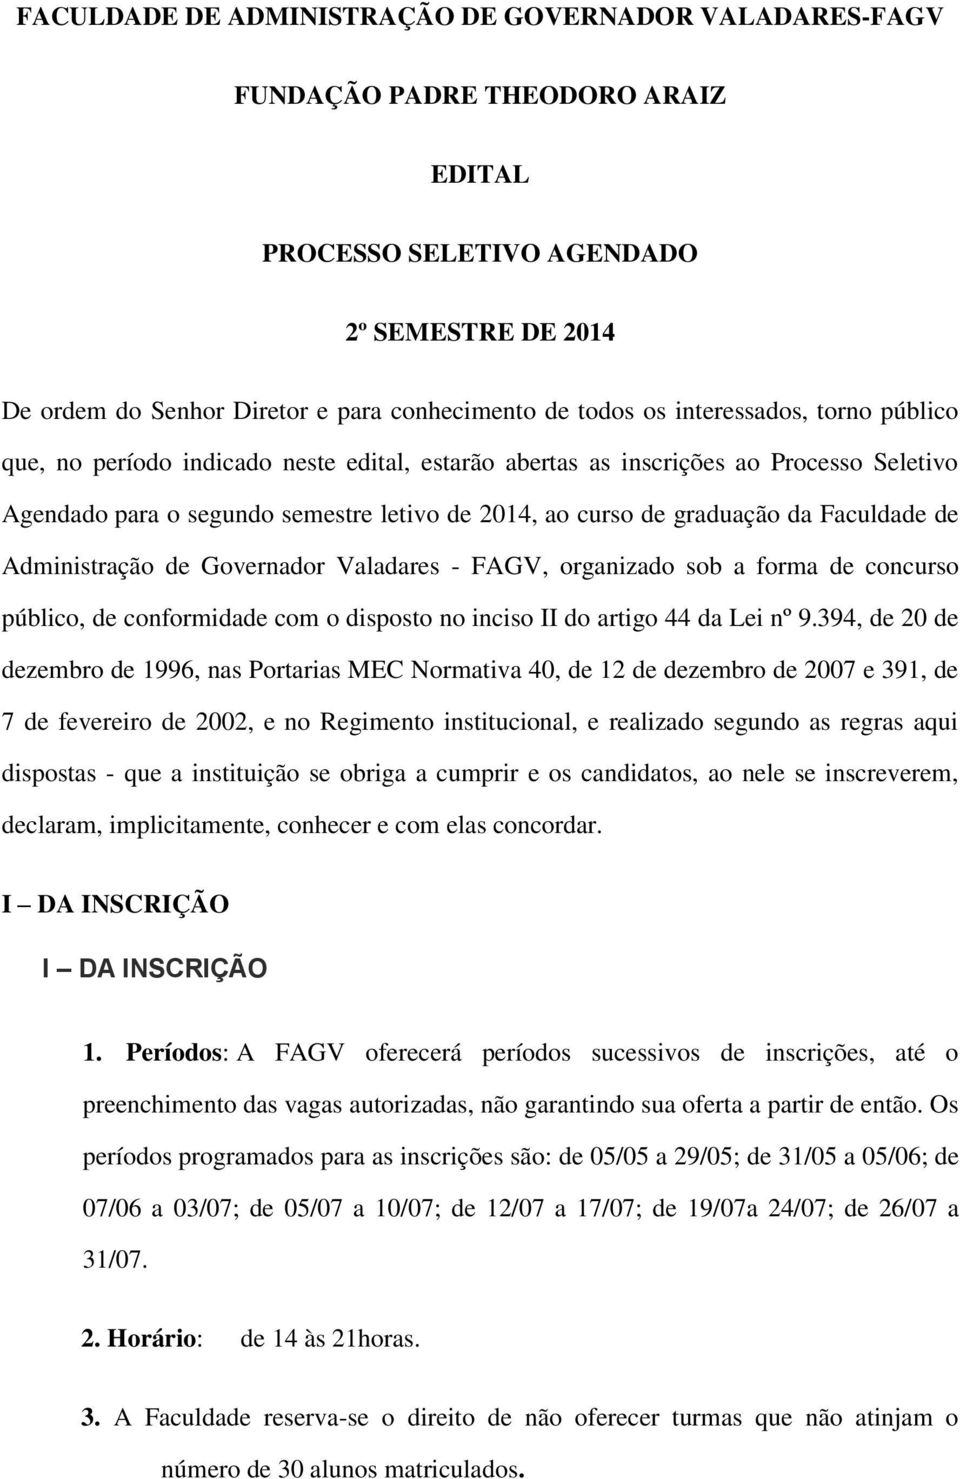 Faculdade de Administração de Governador Valadares - FAGV, organizado sob a forma de concurso público, de conformidade com o disposto no inciso II do artigo 44 da Lei nº 9.